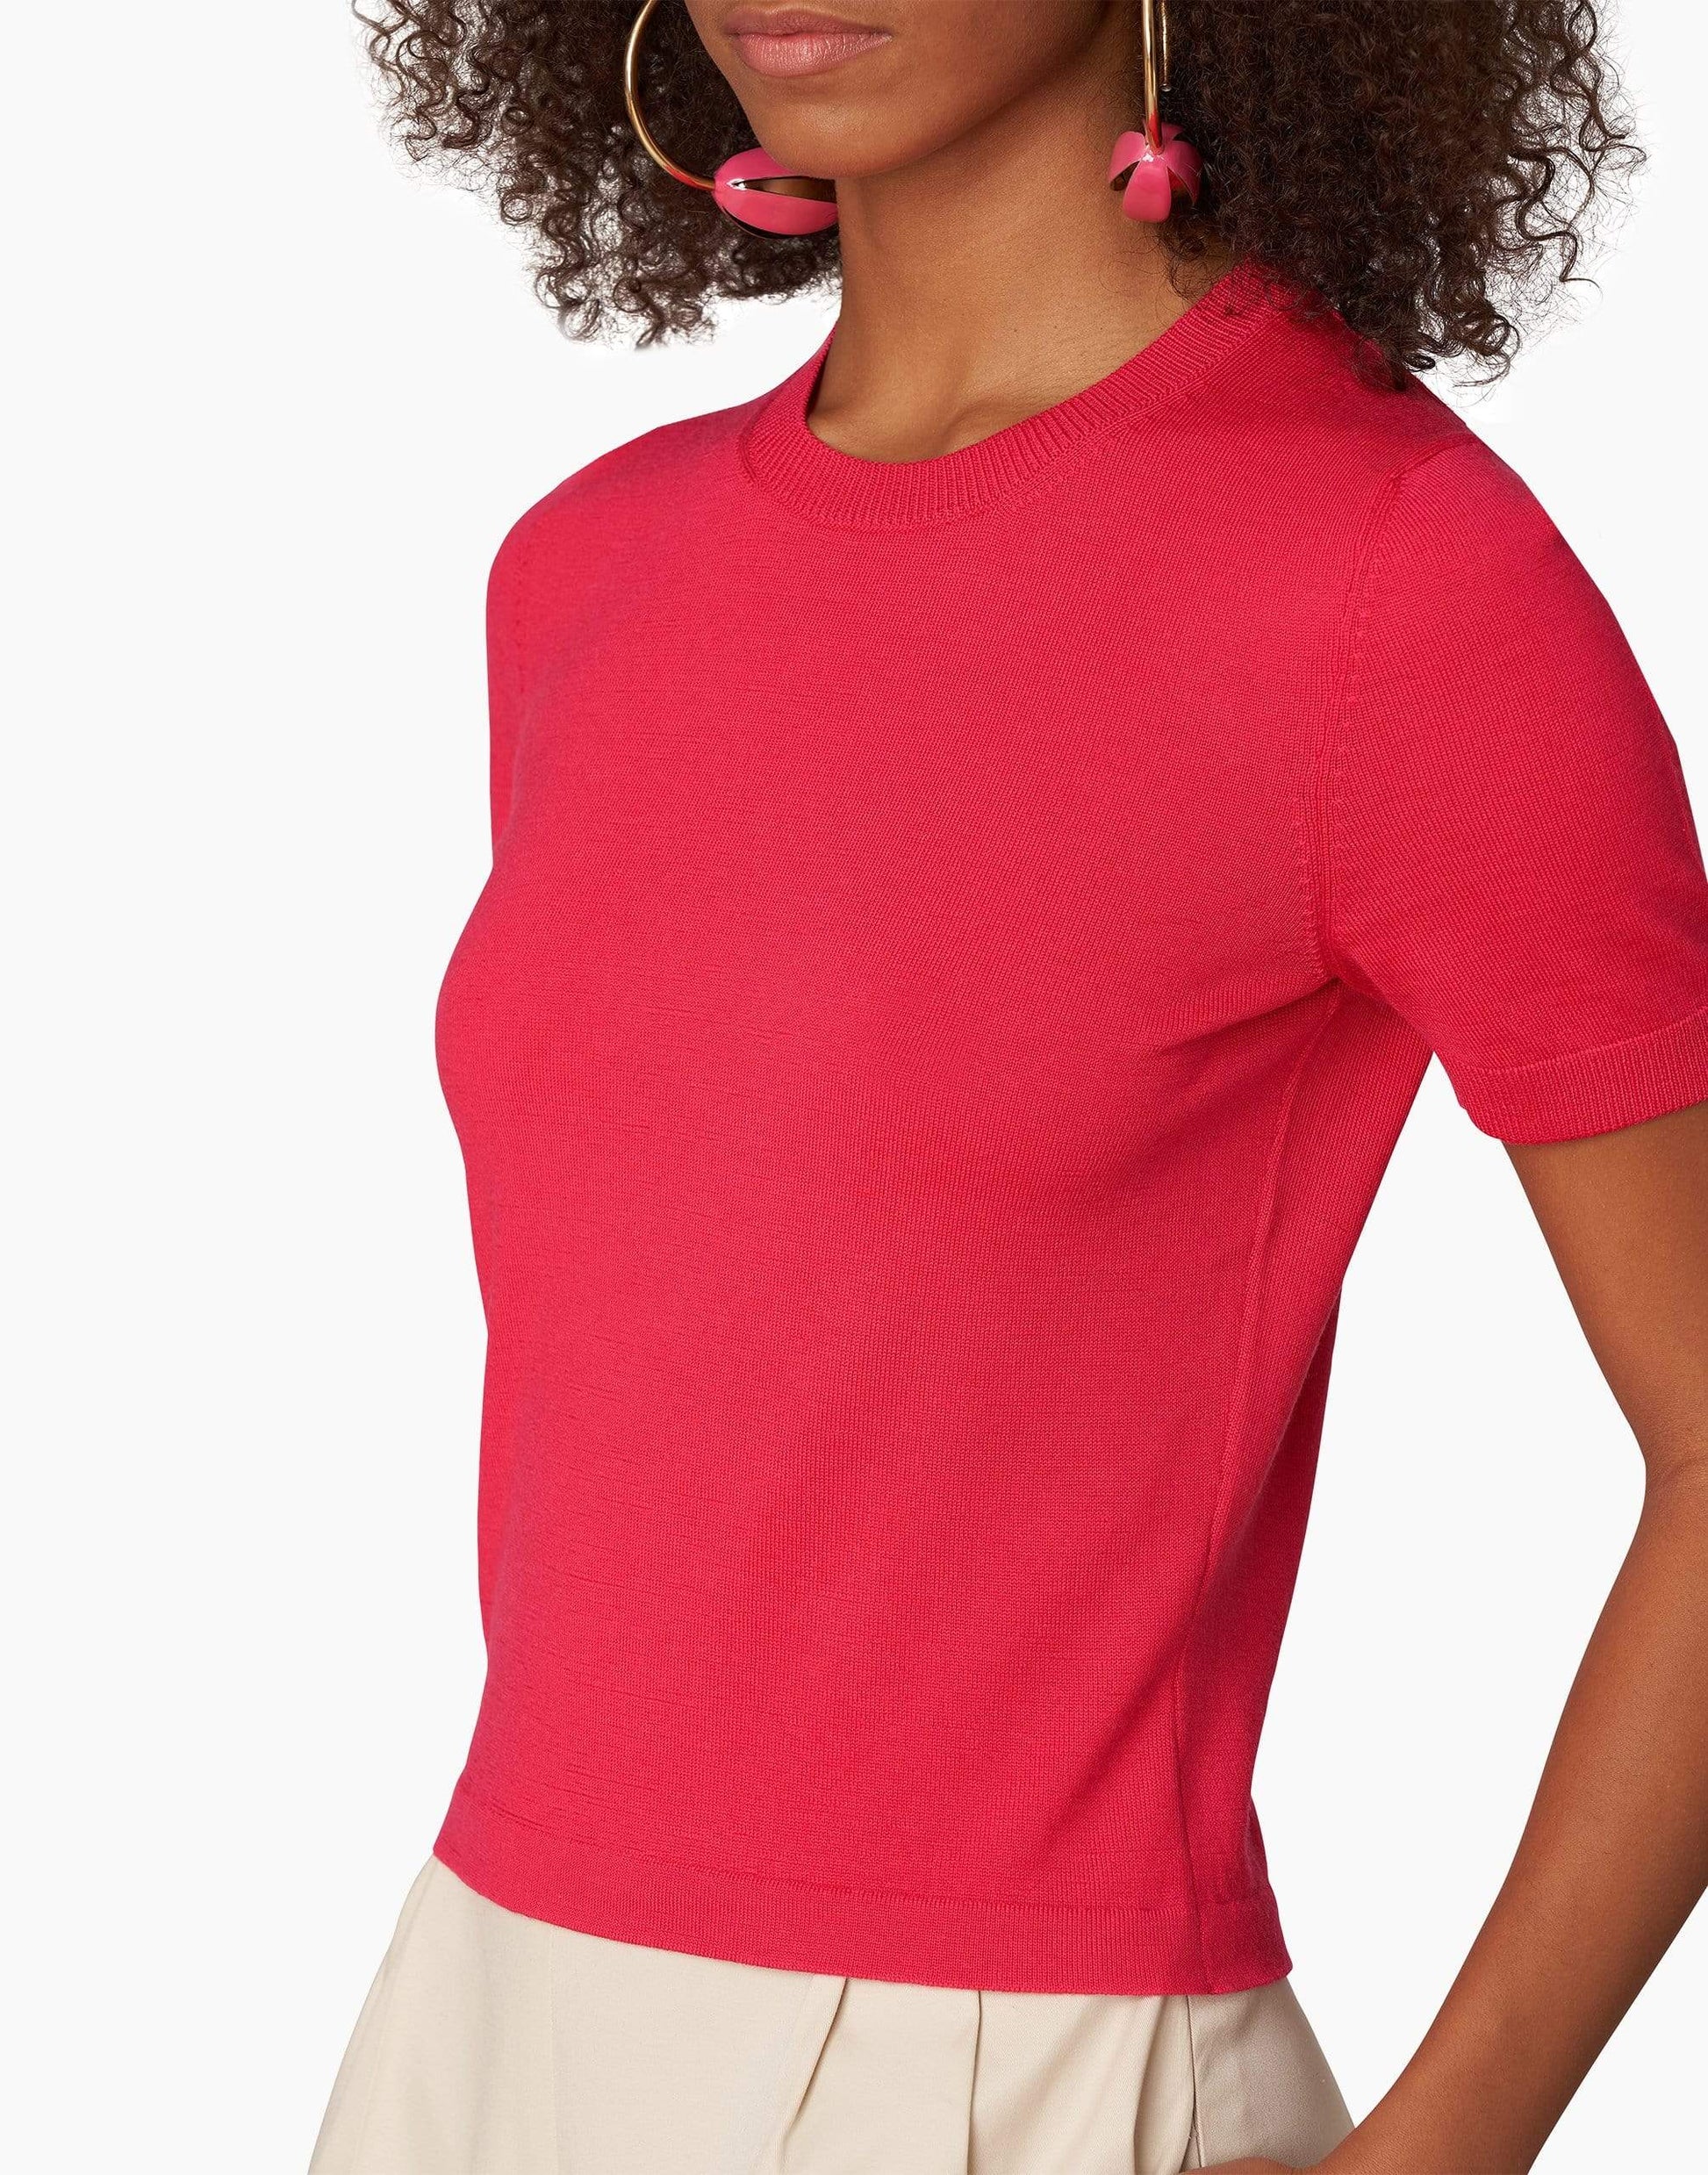 CAROLINA HERRERA-Azalea Short Sleeve Knit T-Shirt-